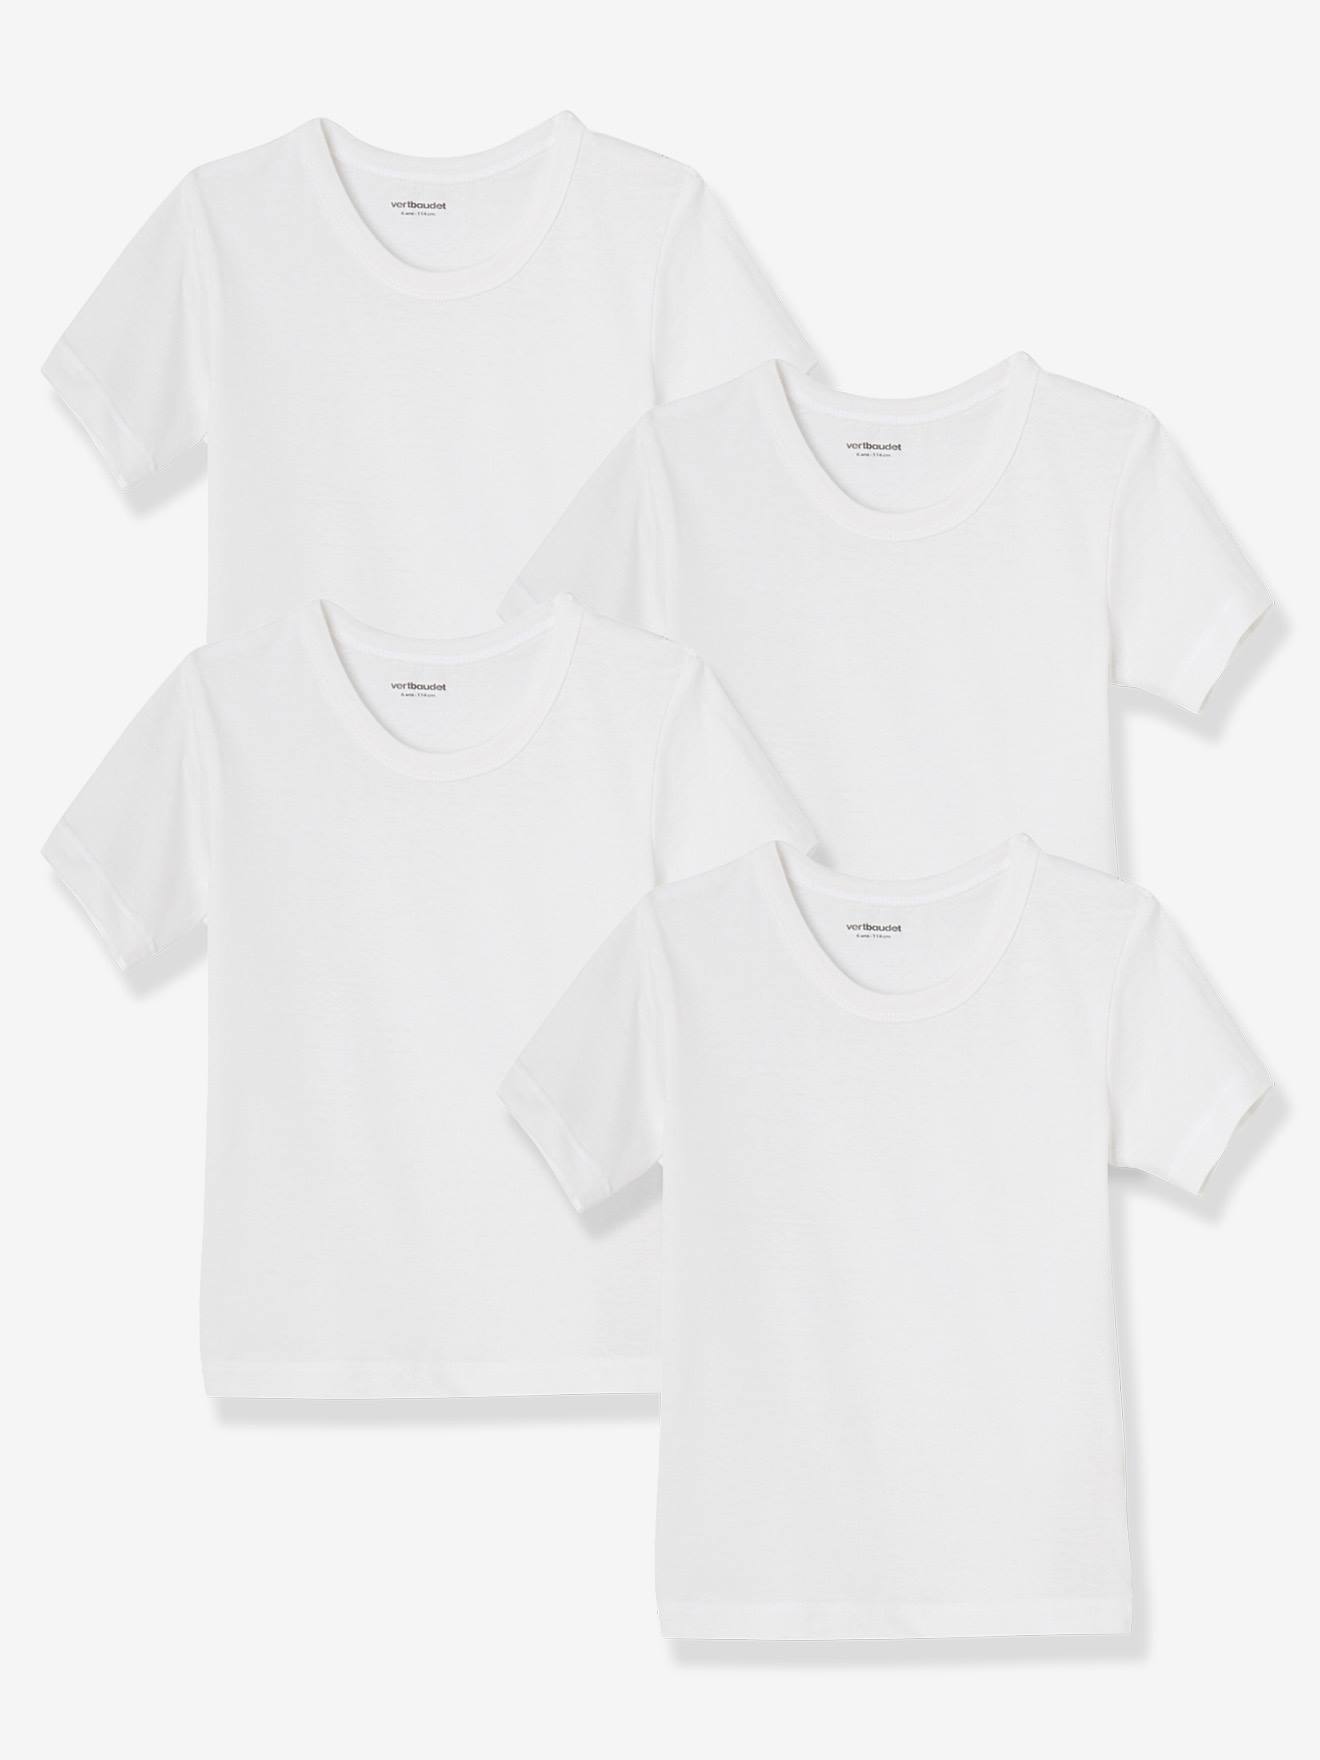 Vertbaudet 4er-Pack Kinder T-Shirts BASIC Oeko-Tex